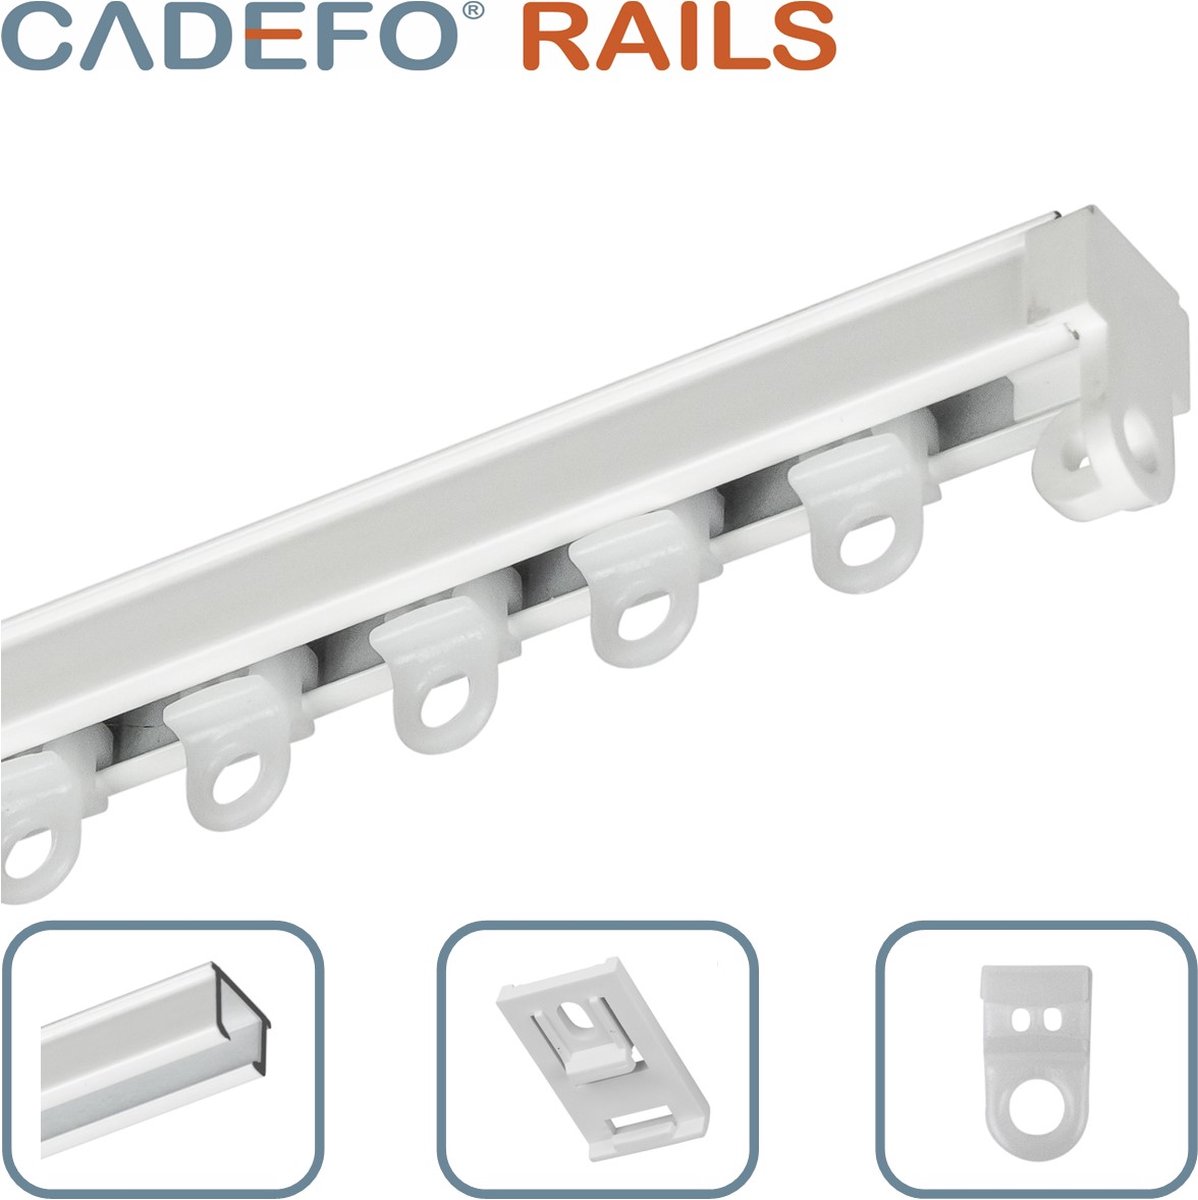 CADEFO RAILS (401 - 450 cm) Gordijnrails - Compleet op maat! - UIT 1 STUK - Leverbaar tot 6 meter - Plafondbevestiging - Lengte 447 cm